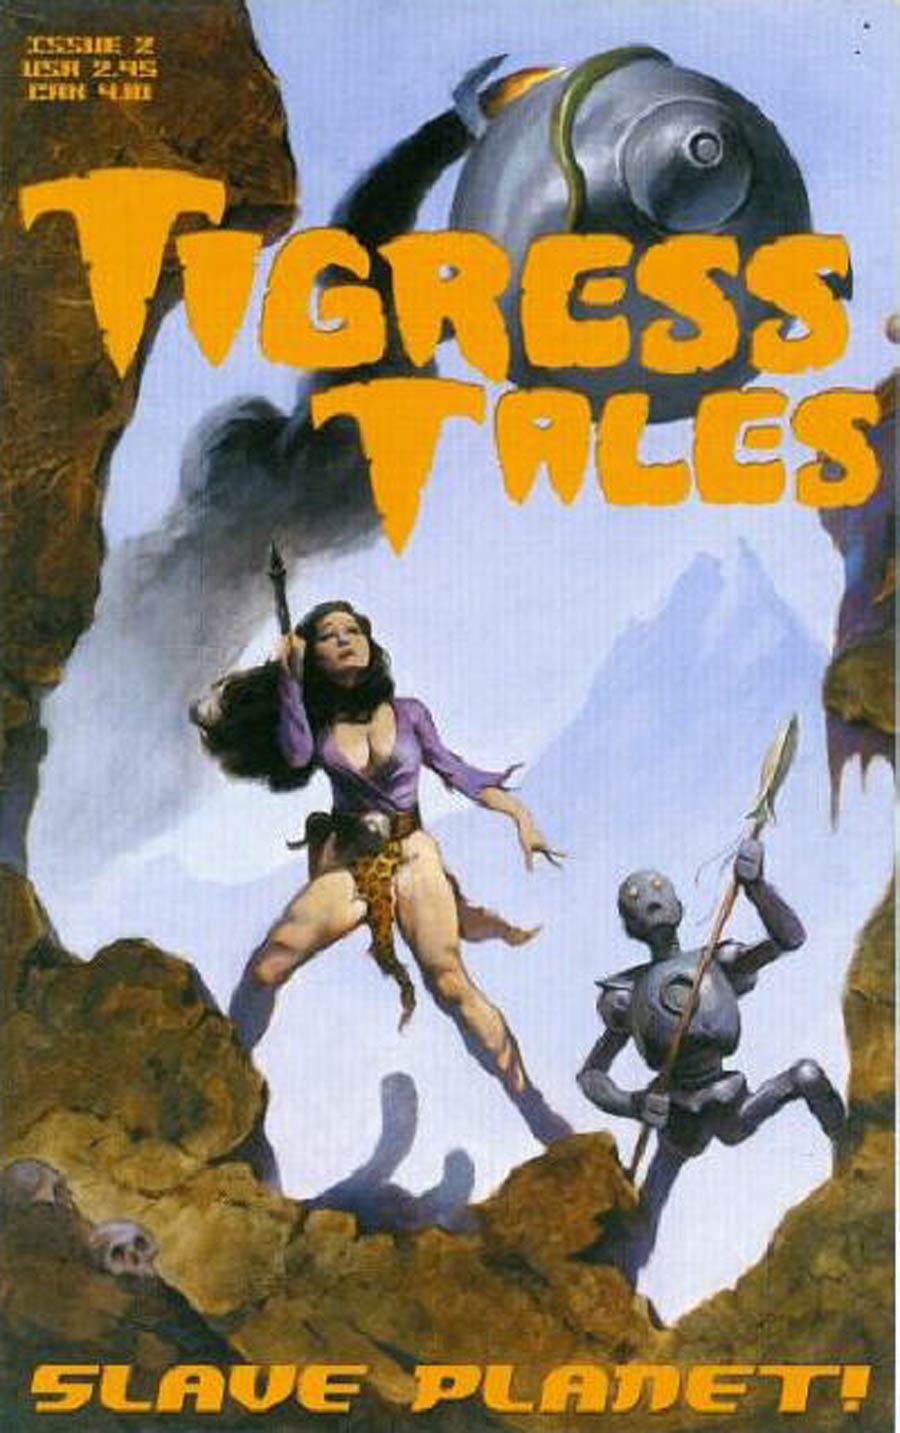 Tigress Tales #2 Cover A